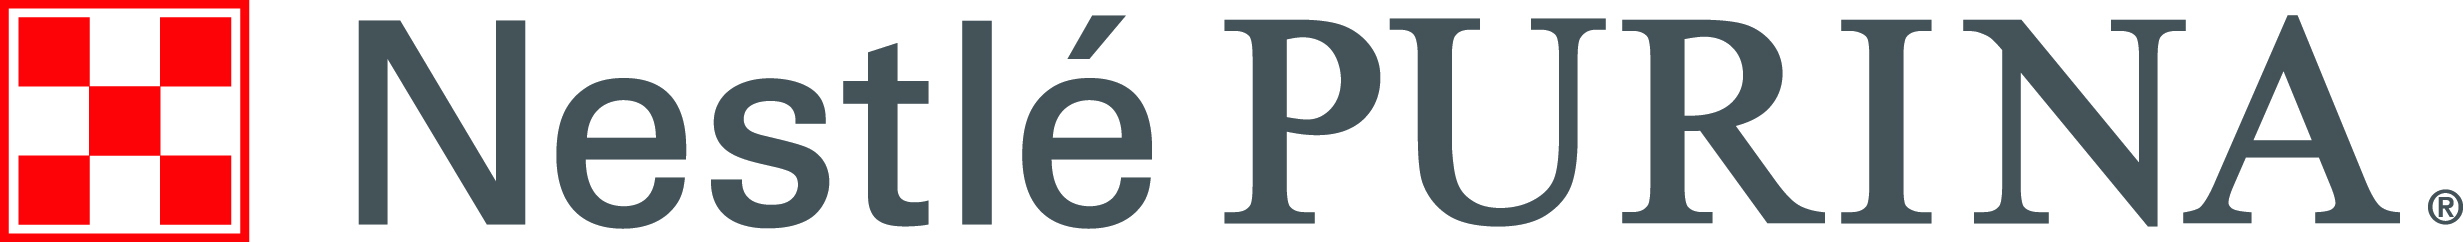 Nestlé Purina PetCare Company logo